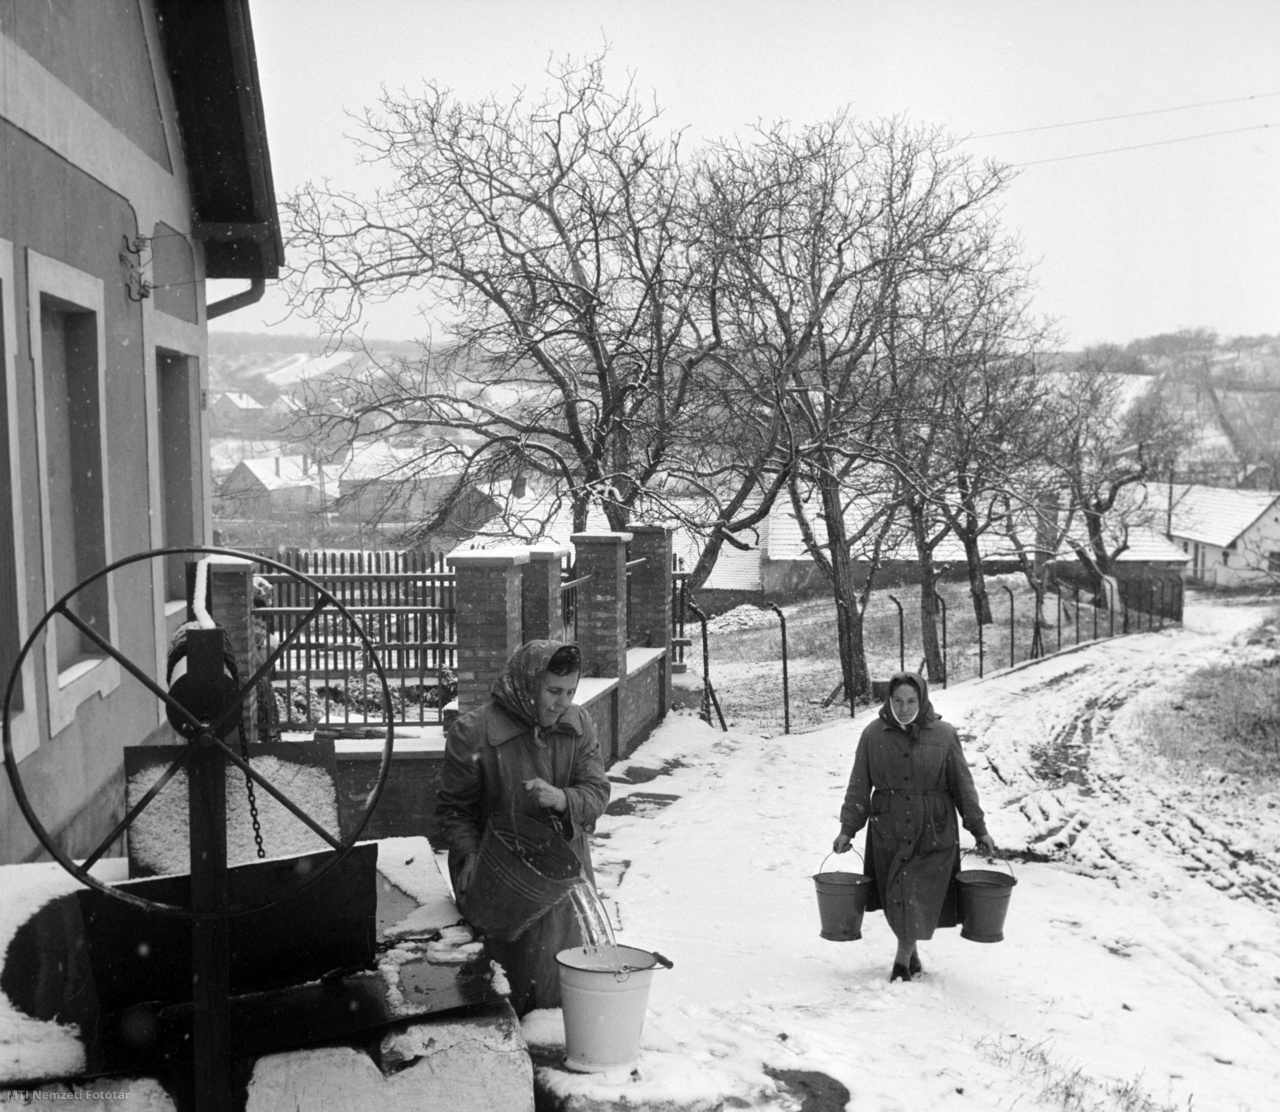 Pilisborosjenő, 1964. december 3. Asszonyok hordják a vizet a kerekes kútból az első havazás reggelén